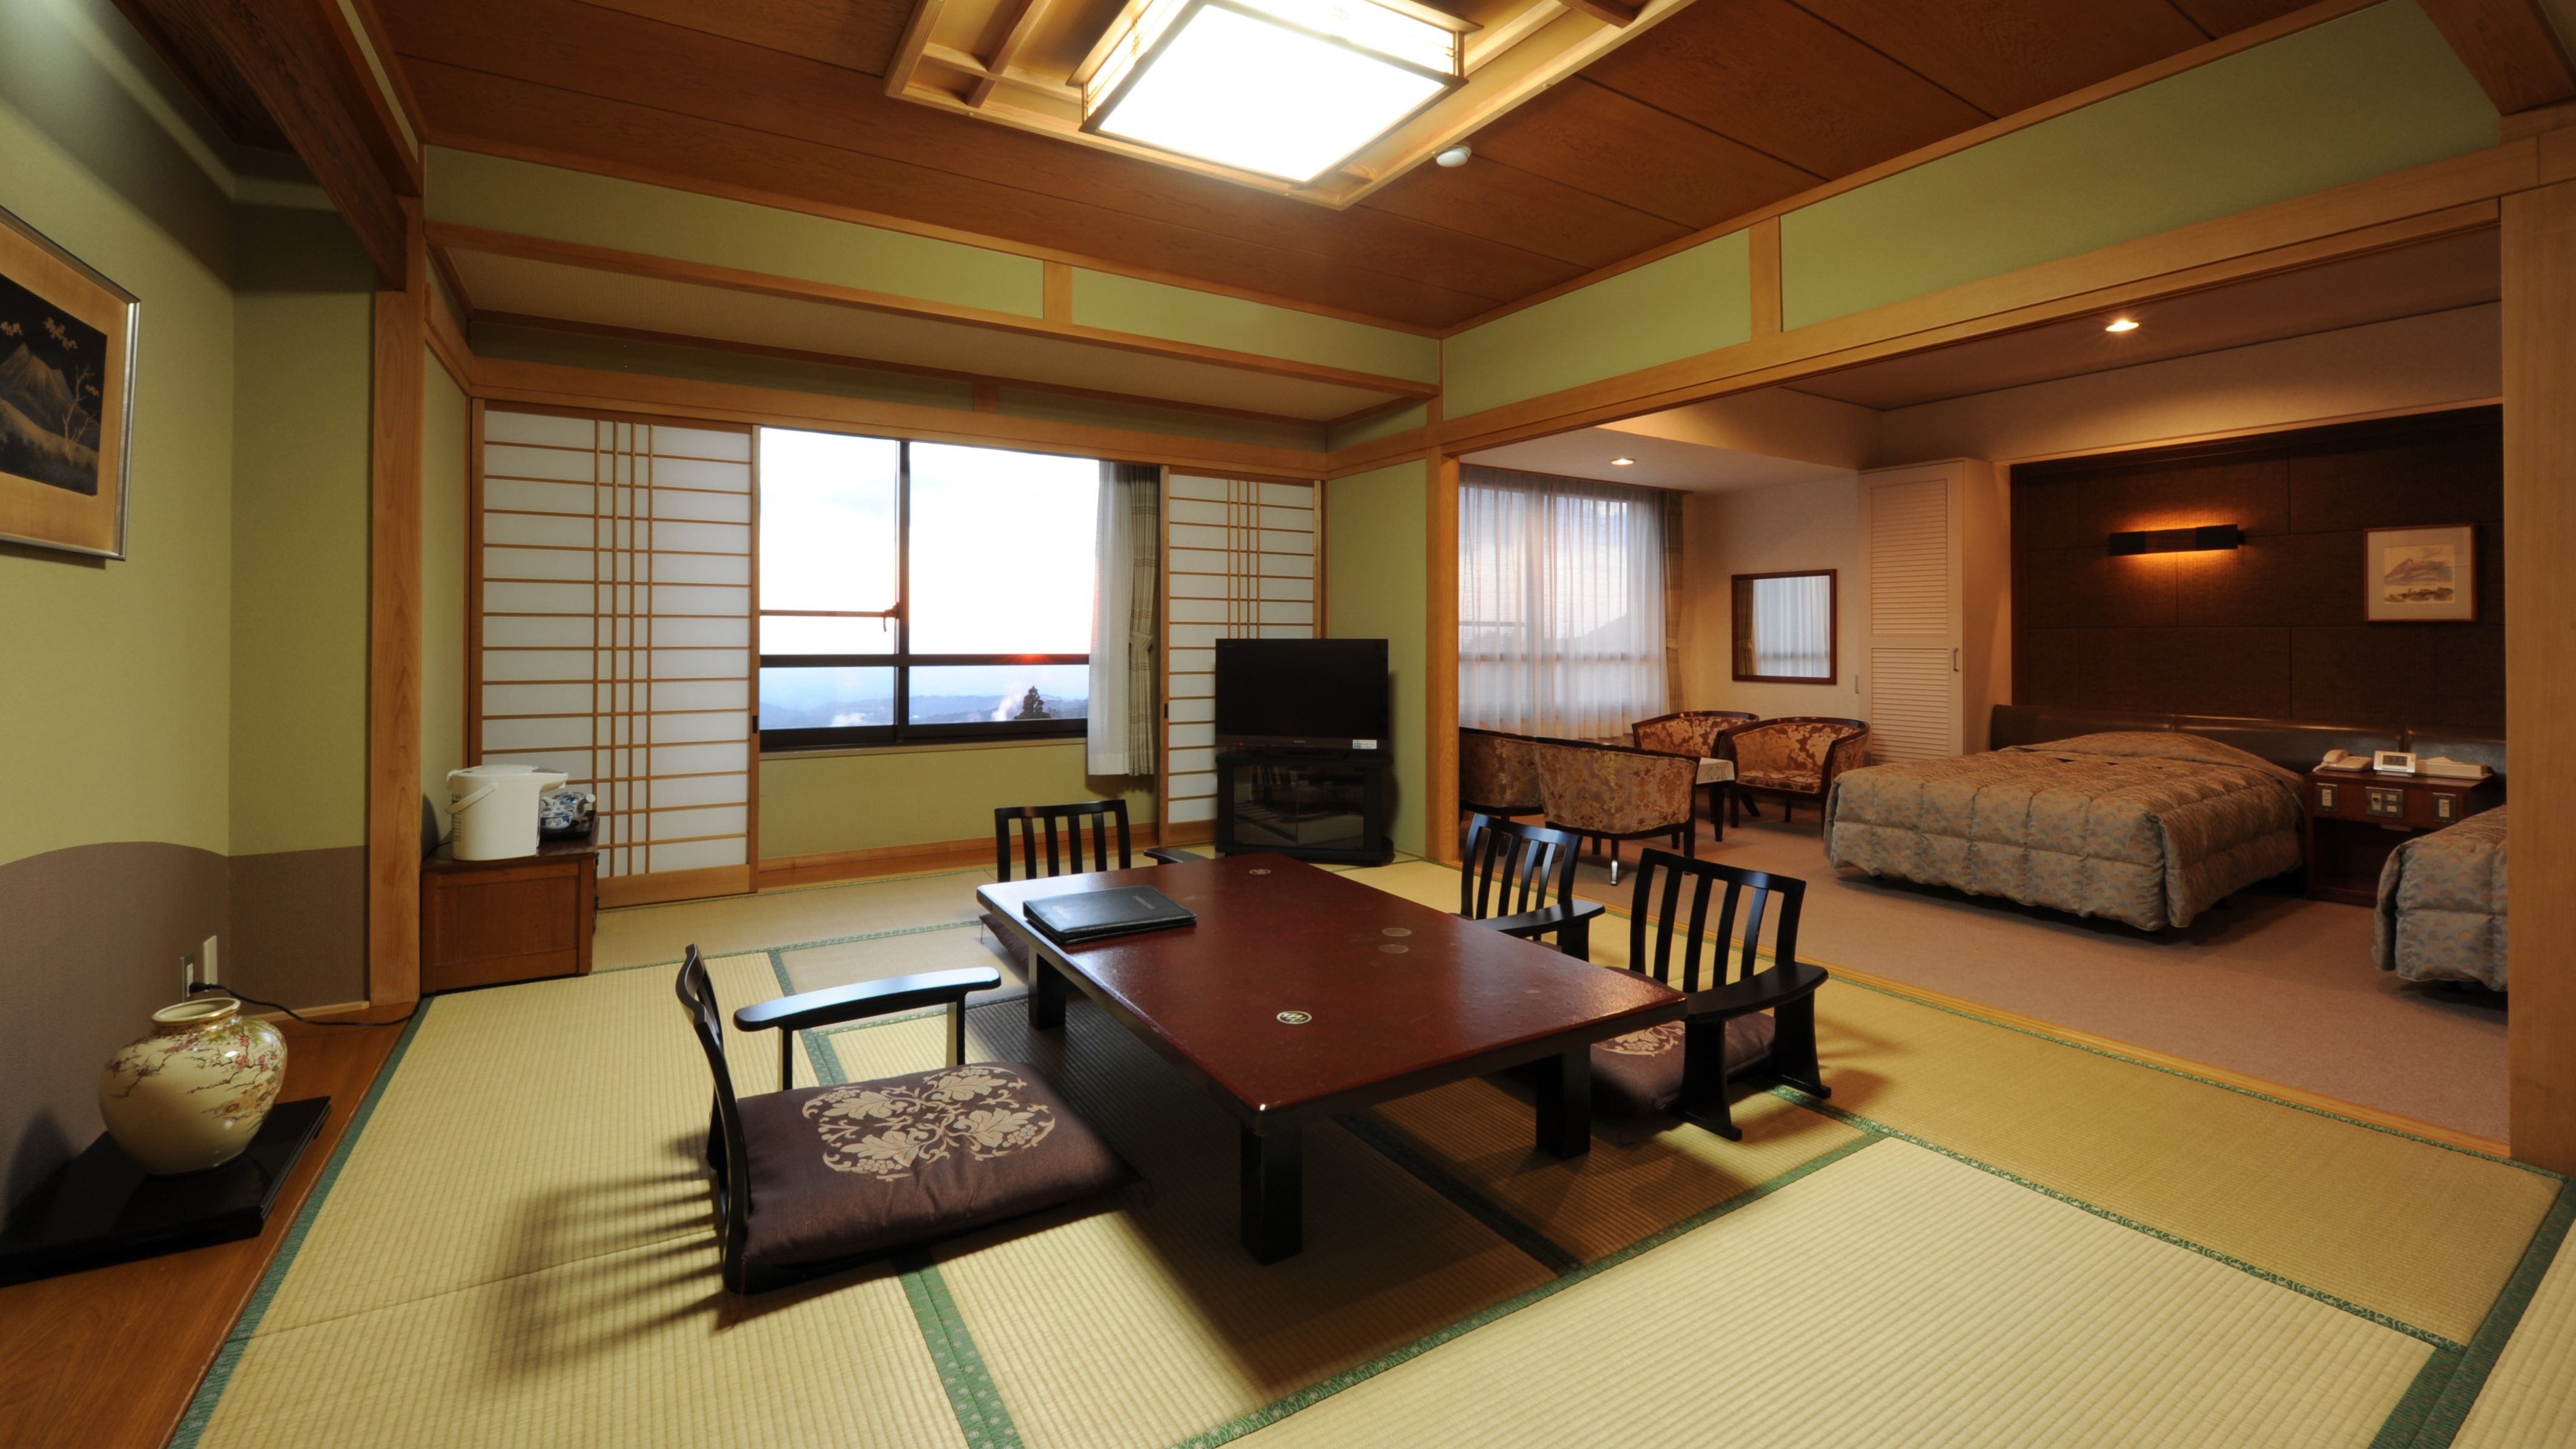 Contoh kamar Jepang dan Barat di lantai paling atas Gedung Timur